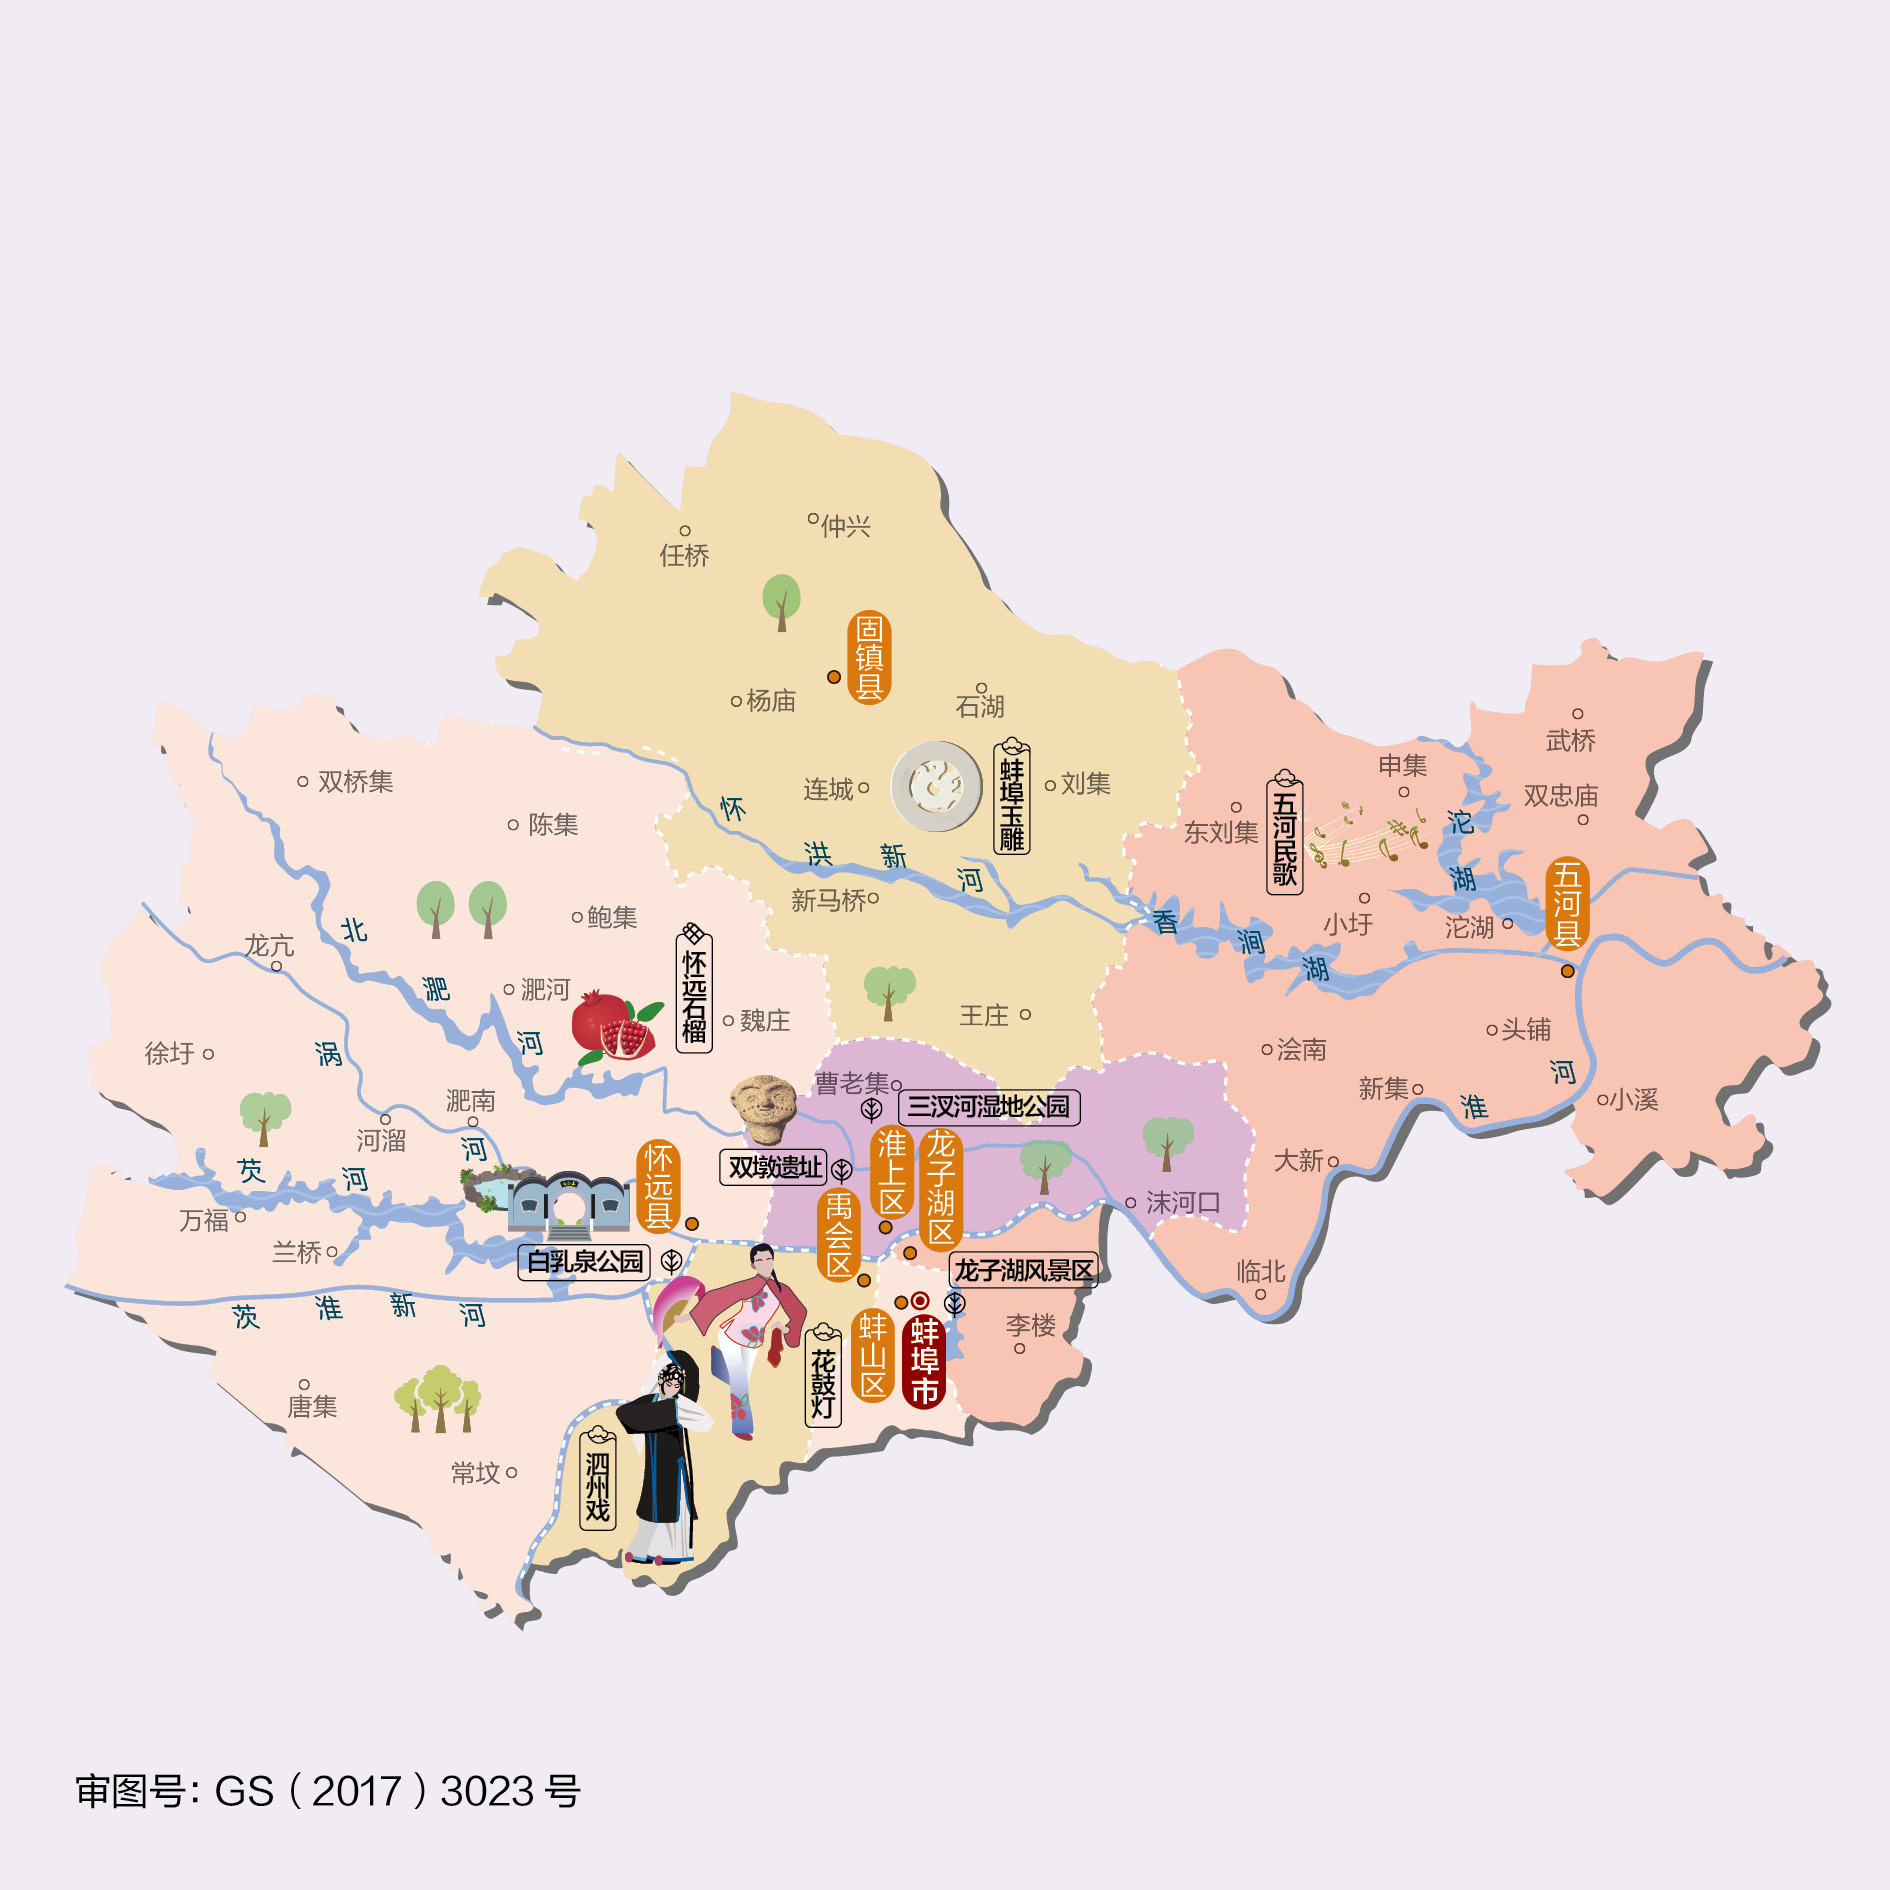 安徽省蚌埠市人文地图